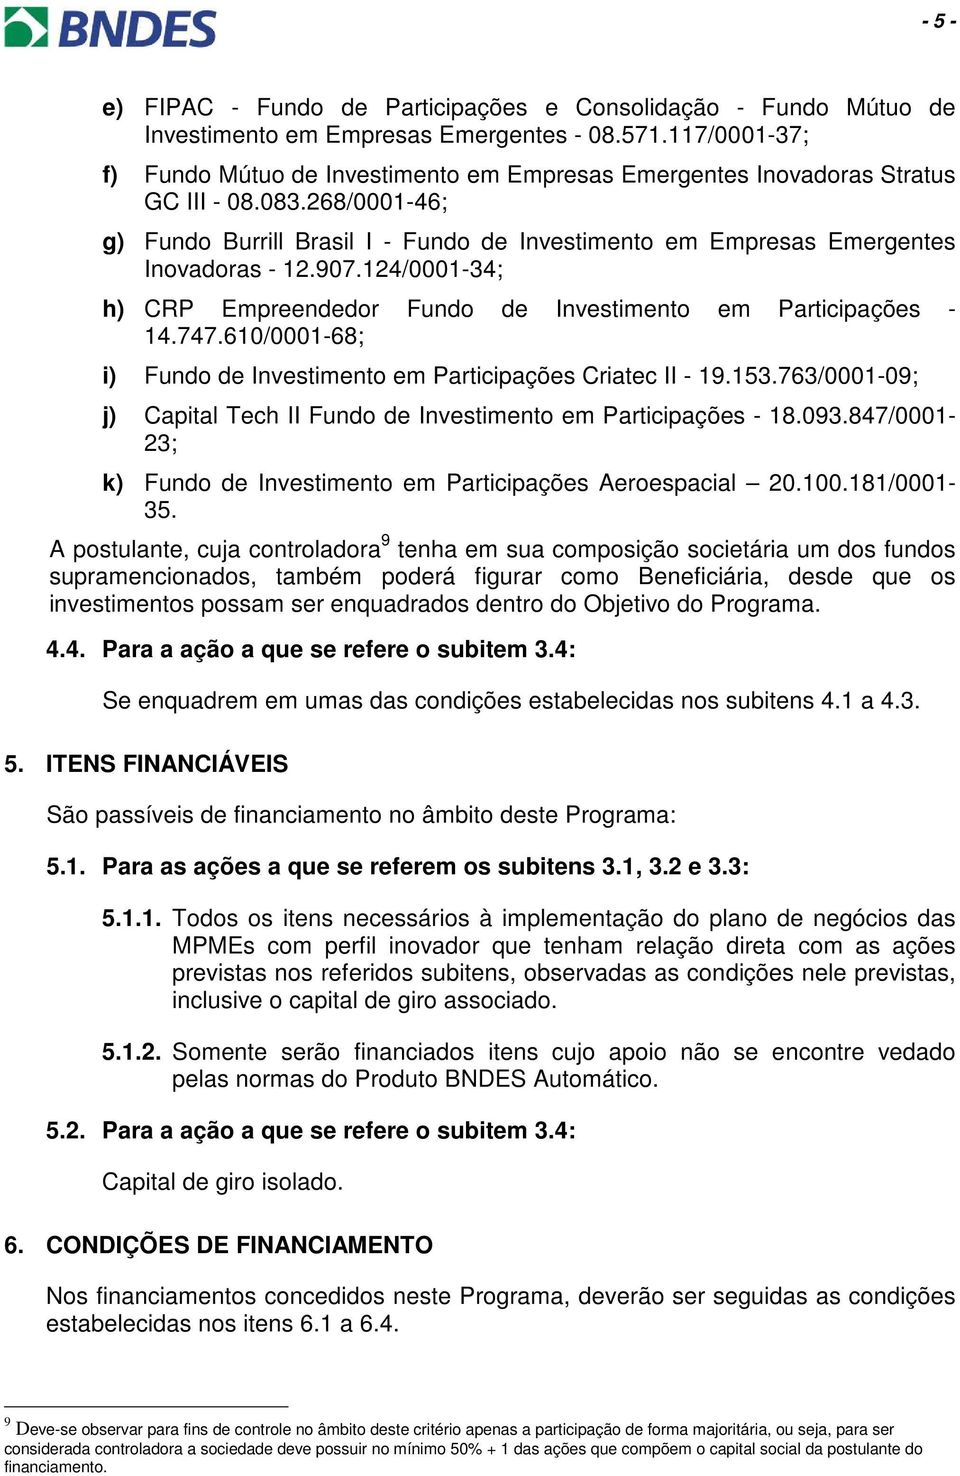 268/0001-46; g) Fundo Burrill Brasil I - Fundo de Investimento em Empresas Emergentes Inovadoras - 12.907.124/0001-34; h) CRP Empreendedor Fundo de Investimento em Participações - 14.747.